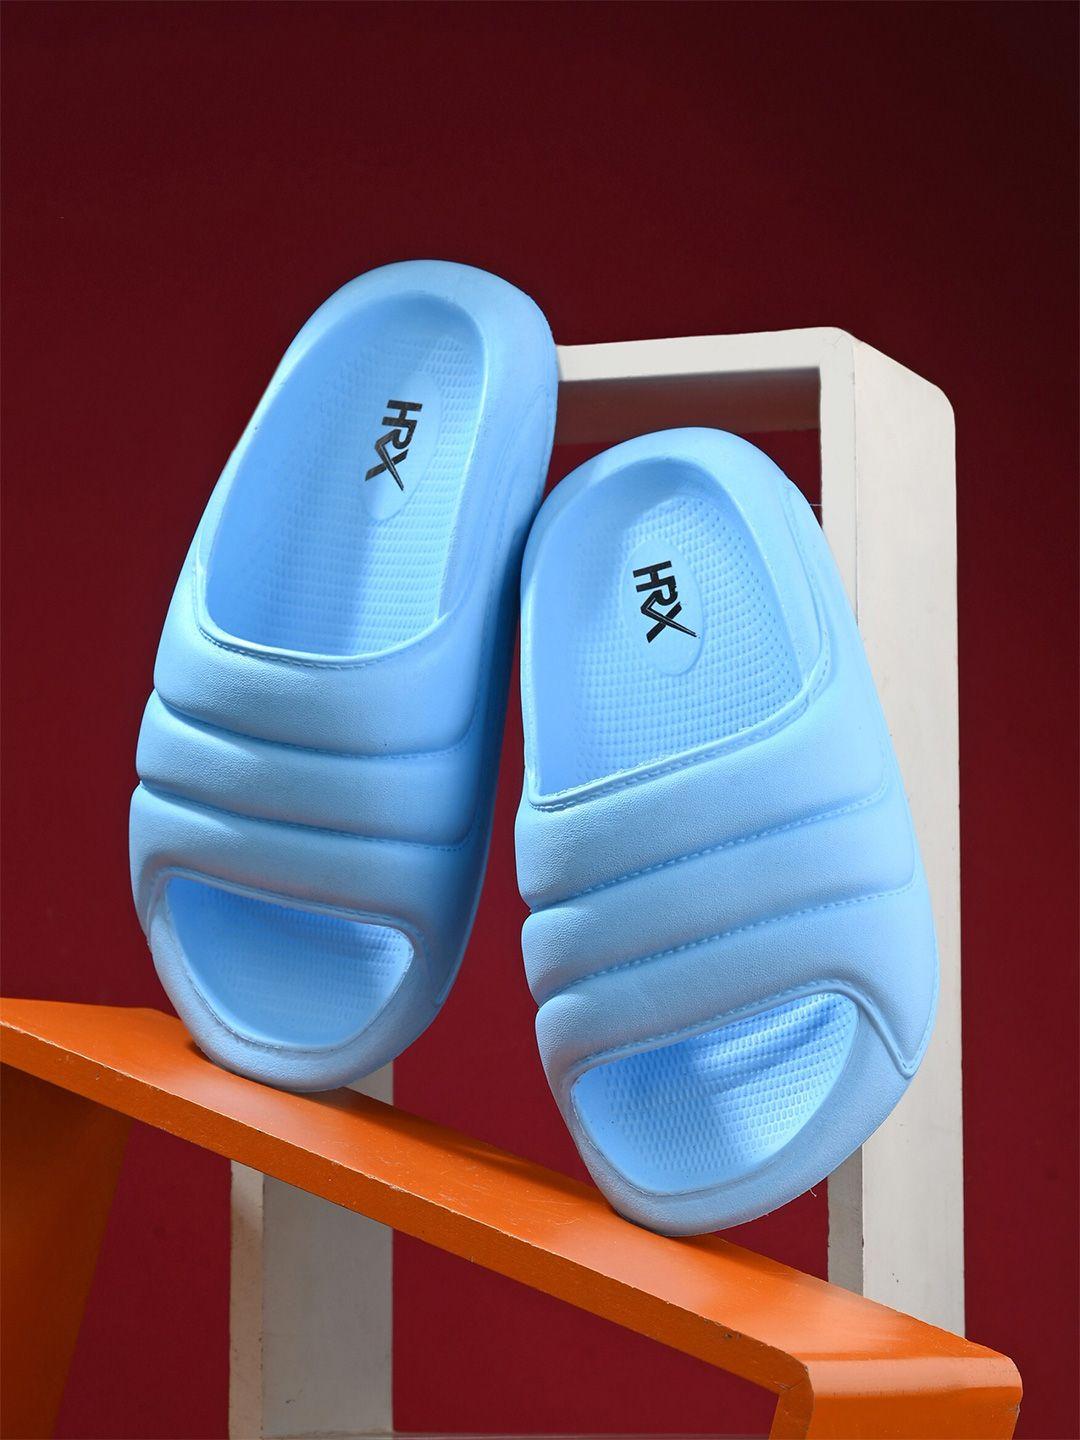 hrx by hrithik roshan women blue textured rubber sliders